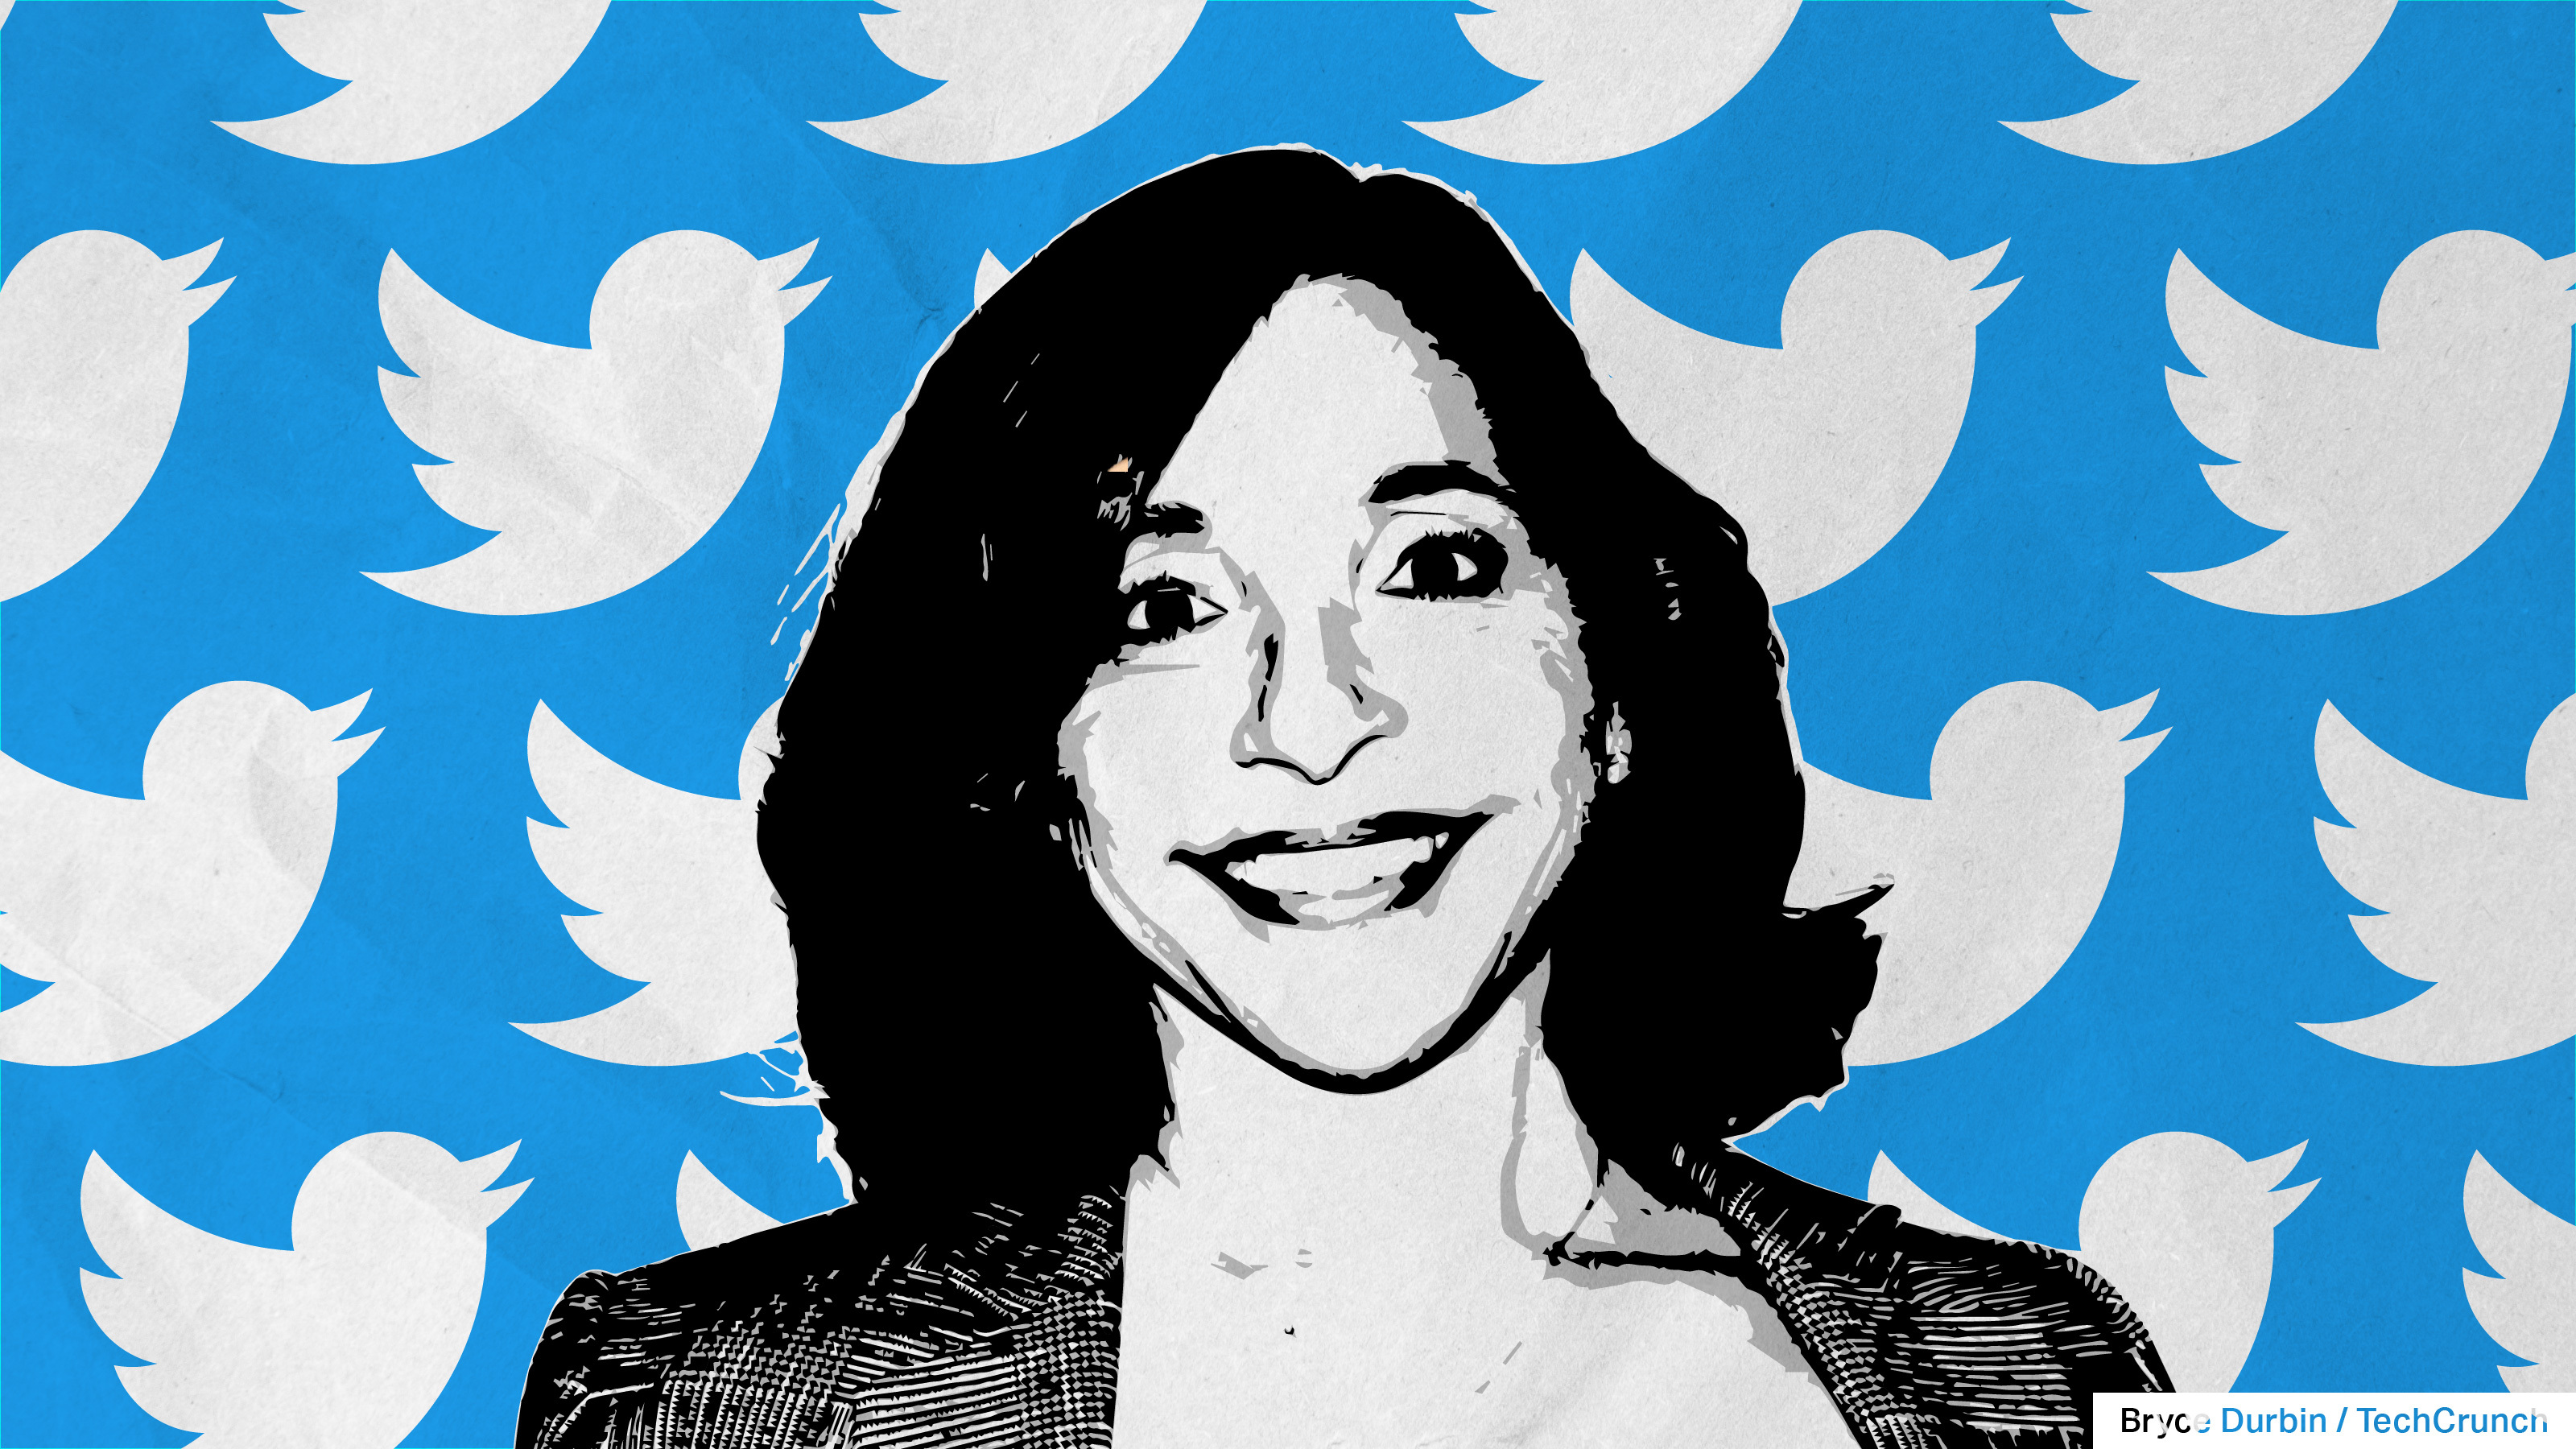 صورة ليندا ياكارينو مع طيور تويتر في الخلفية ، تمثل الرئيس التنفيذي الجديد لتويتر